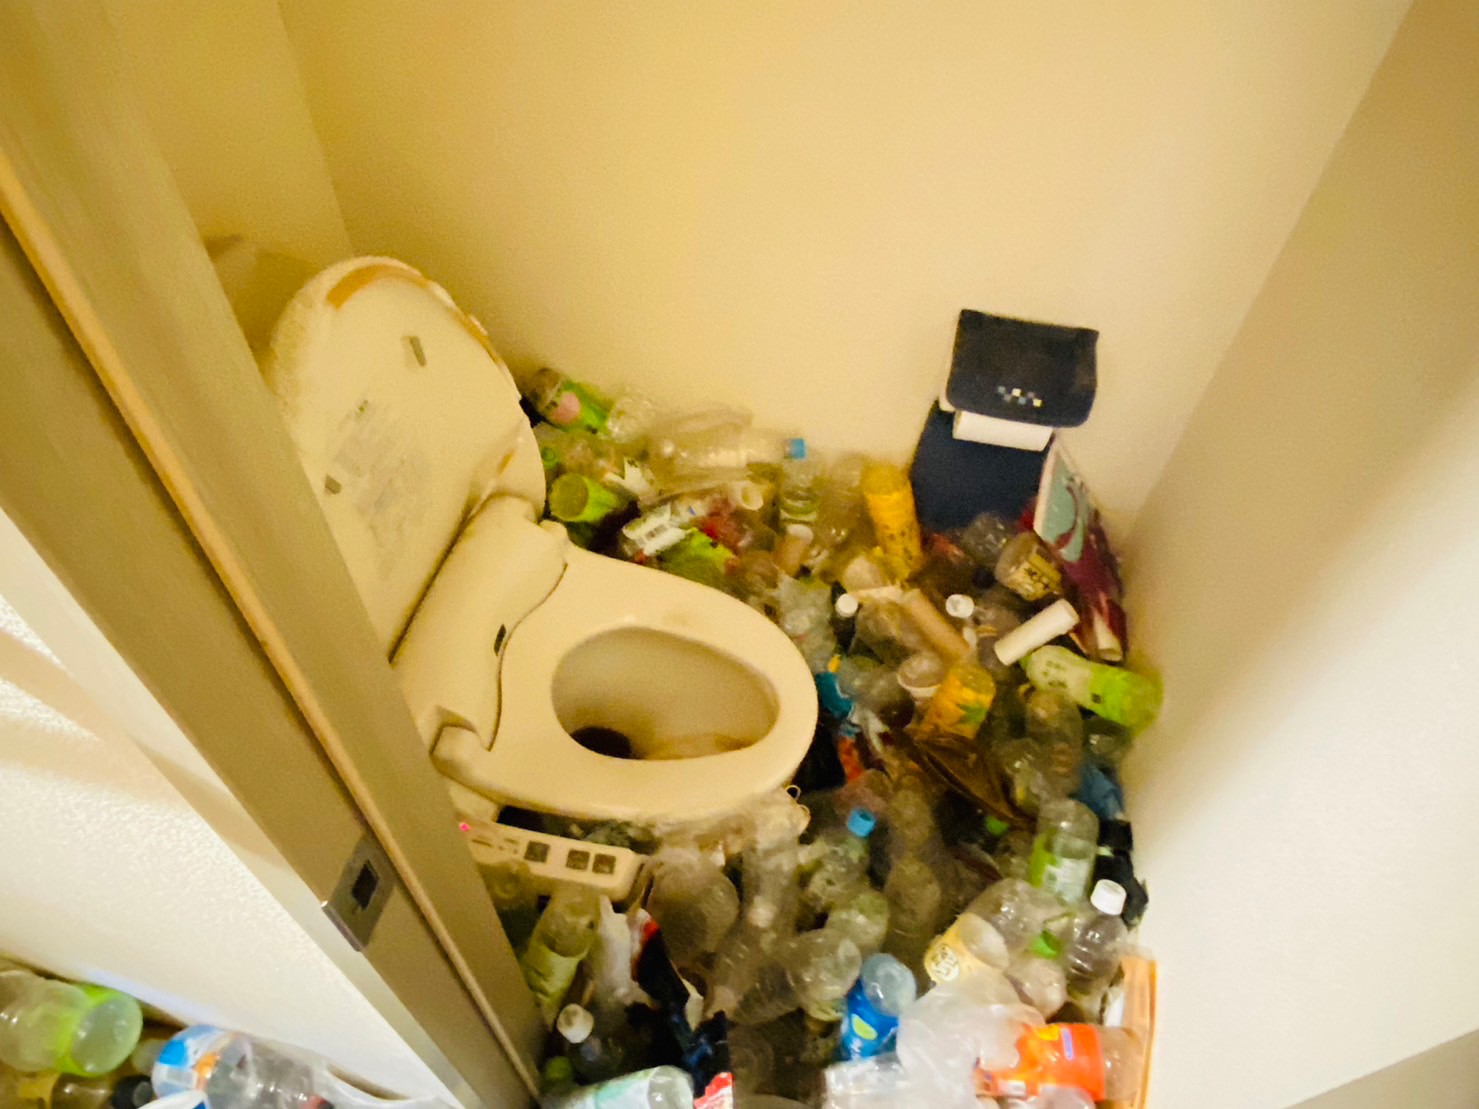 ペットボトル、プラ容器など家庭ゴミ2部屋分の回収前の状態